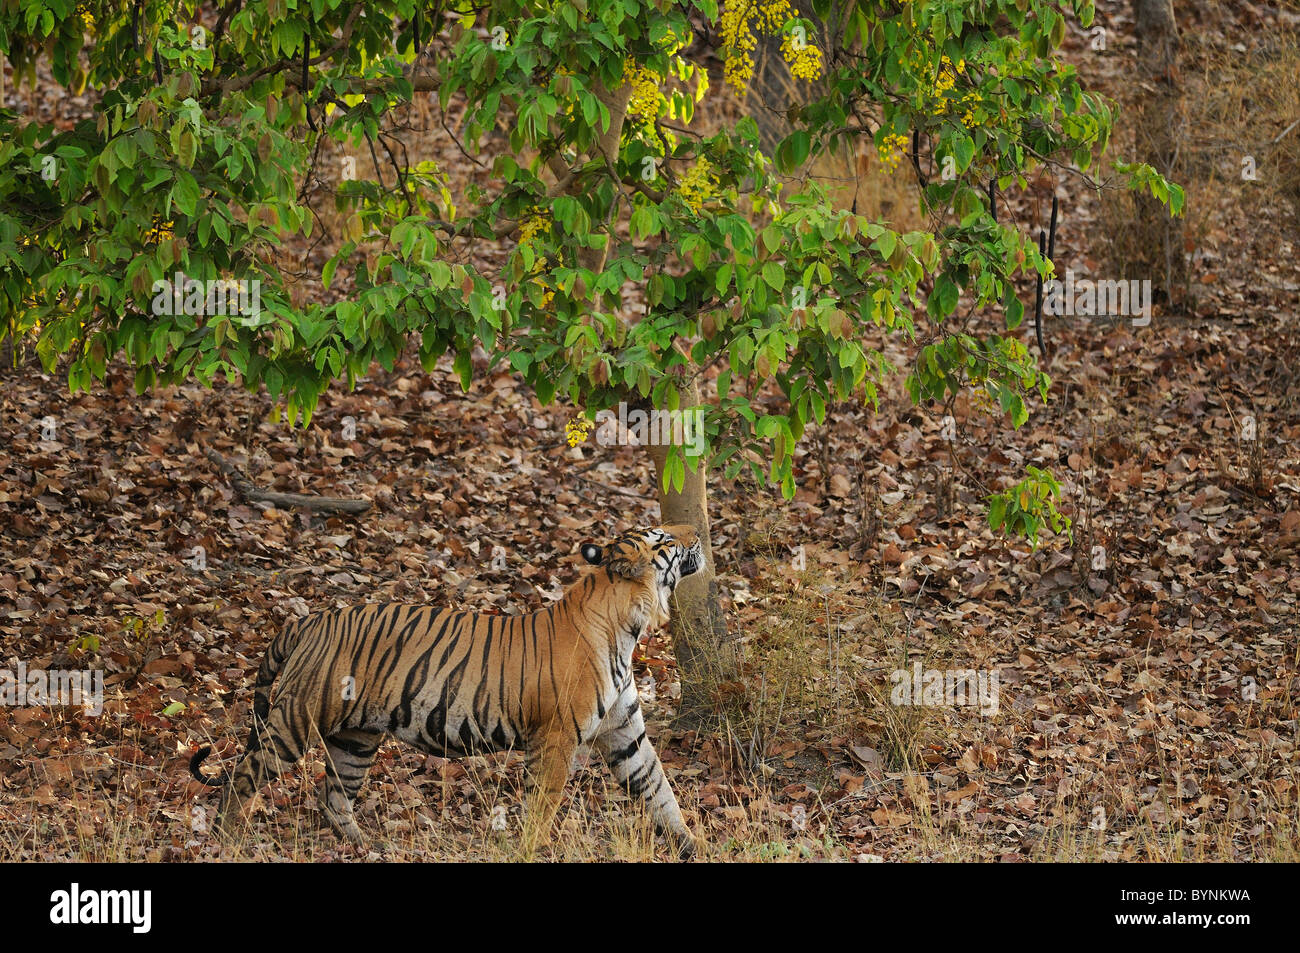 Erwachsenen territoriale männliche Königstiger riechende Baum während einer territorialen Patrouille in Bandhavgarh Tiger Reserve, Indien Stockfoto